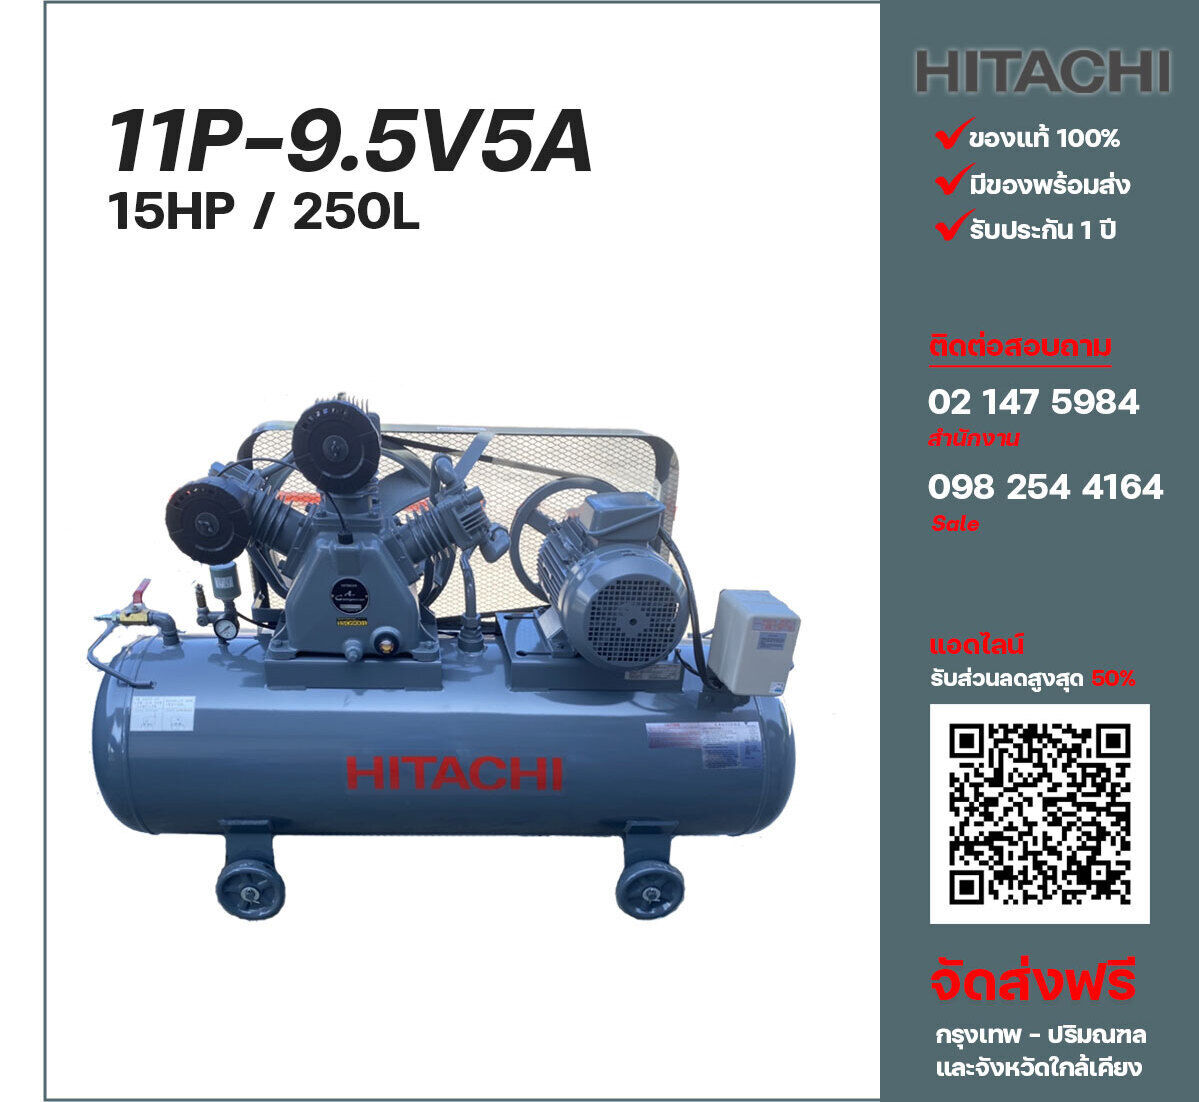 ปั๊มลมฮิตาชิ HITACHI รุ่นใช้น้ำมัน 11P-9.5V5A380V ปั๊มลมลูกสูบ ขนาด 3 สูบ 15 แรงม้า 250 ลิตร Hitachi พร้อมมอเตอร์ Hitachi ไฟ 380V ส่งฟรี กรุงเทพฯ-ปริมณฑล รับประกัน 1 ปี